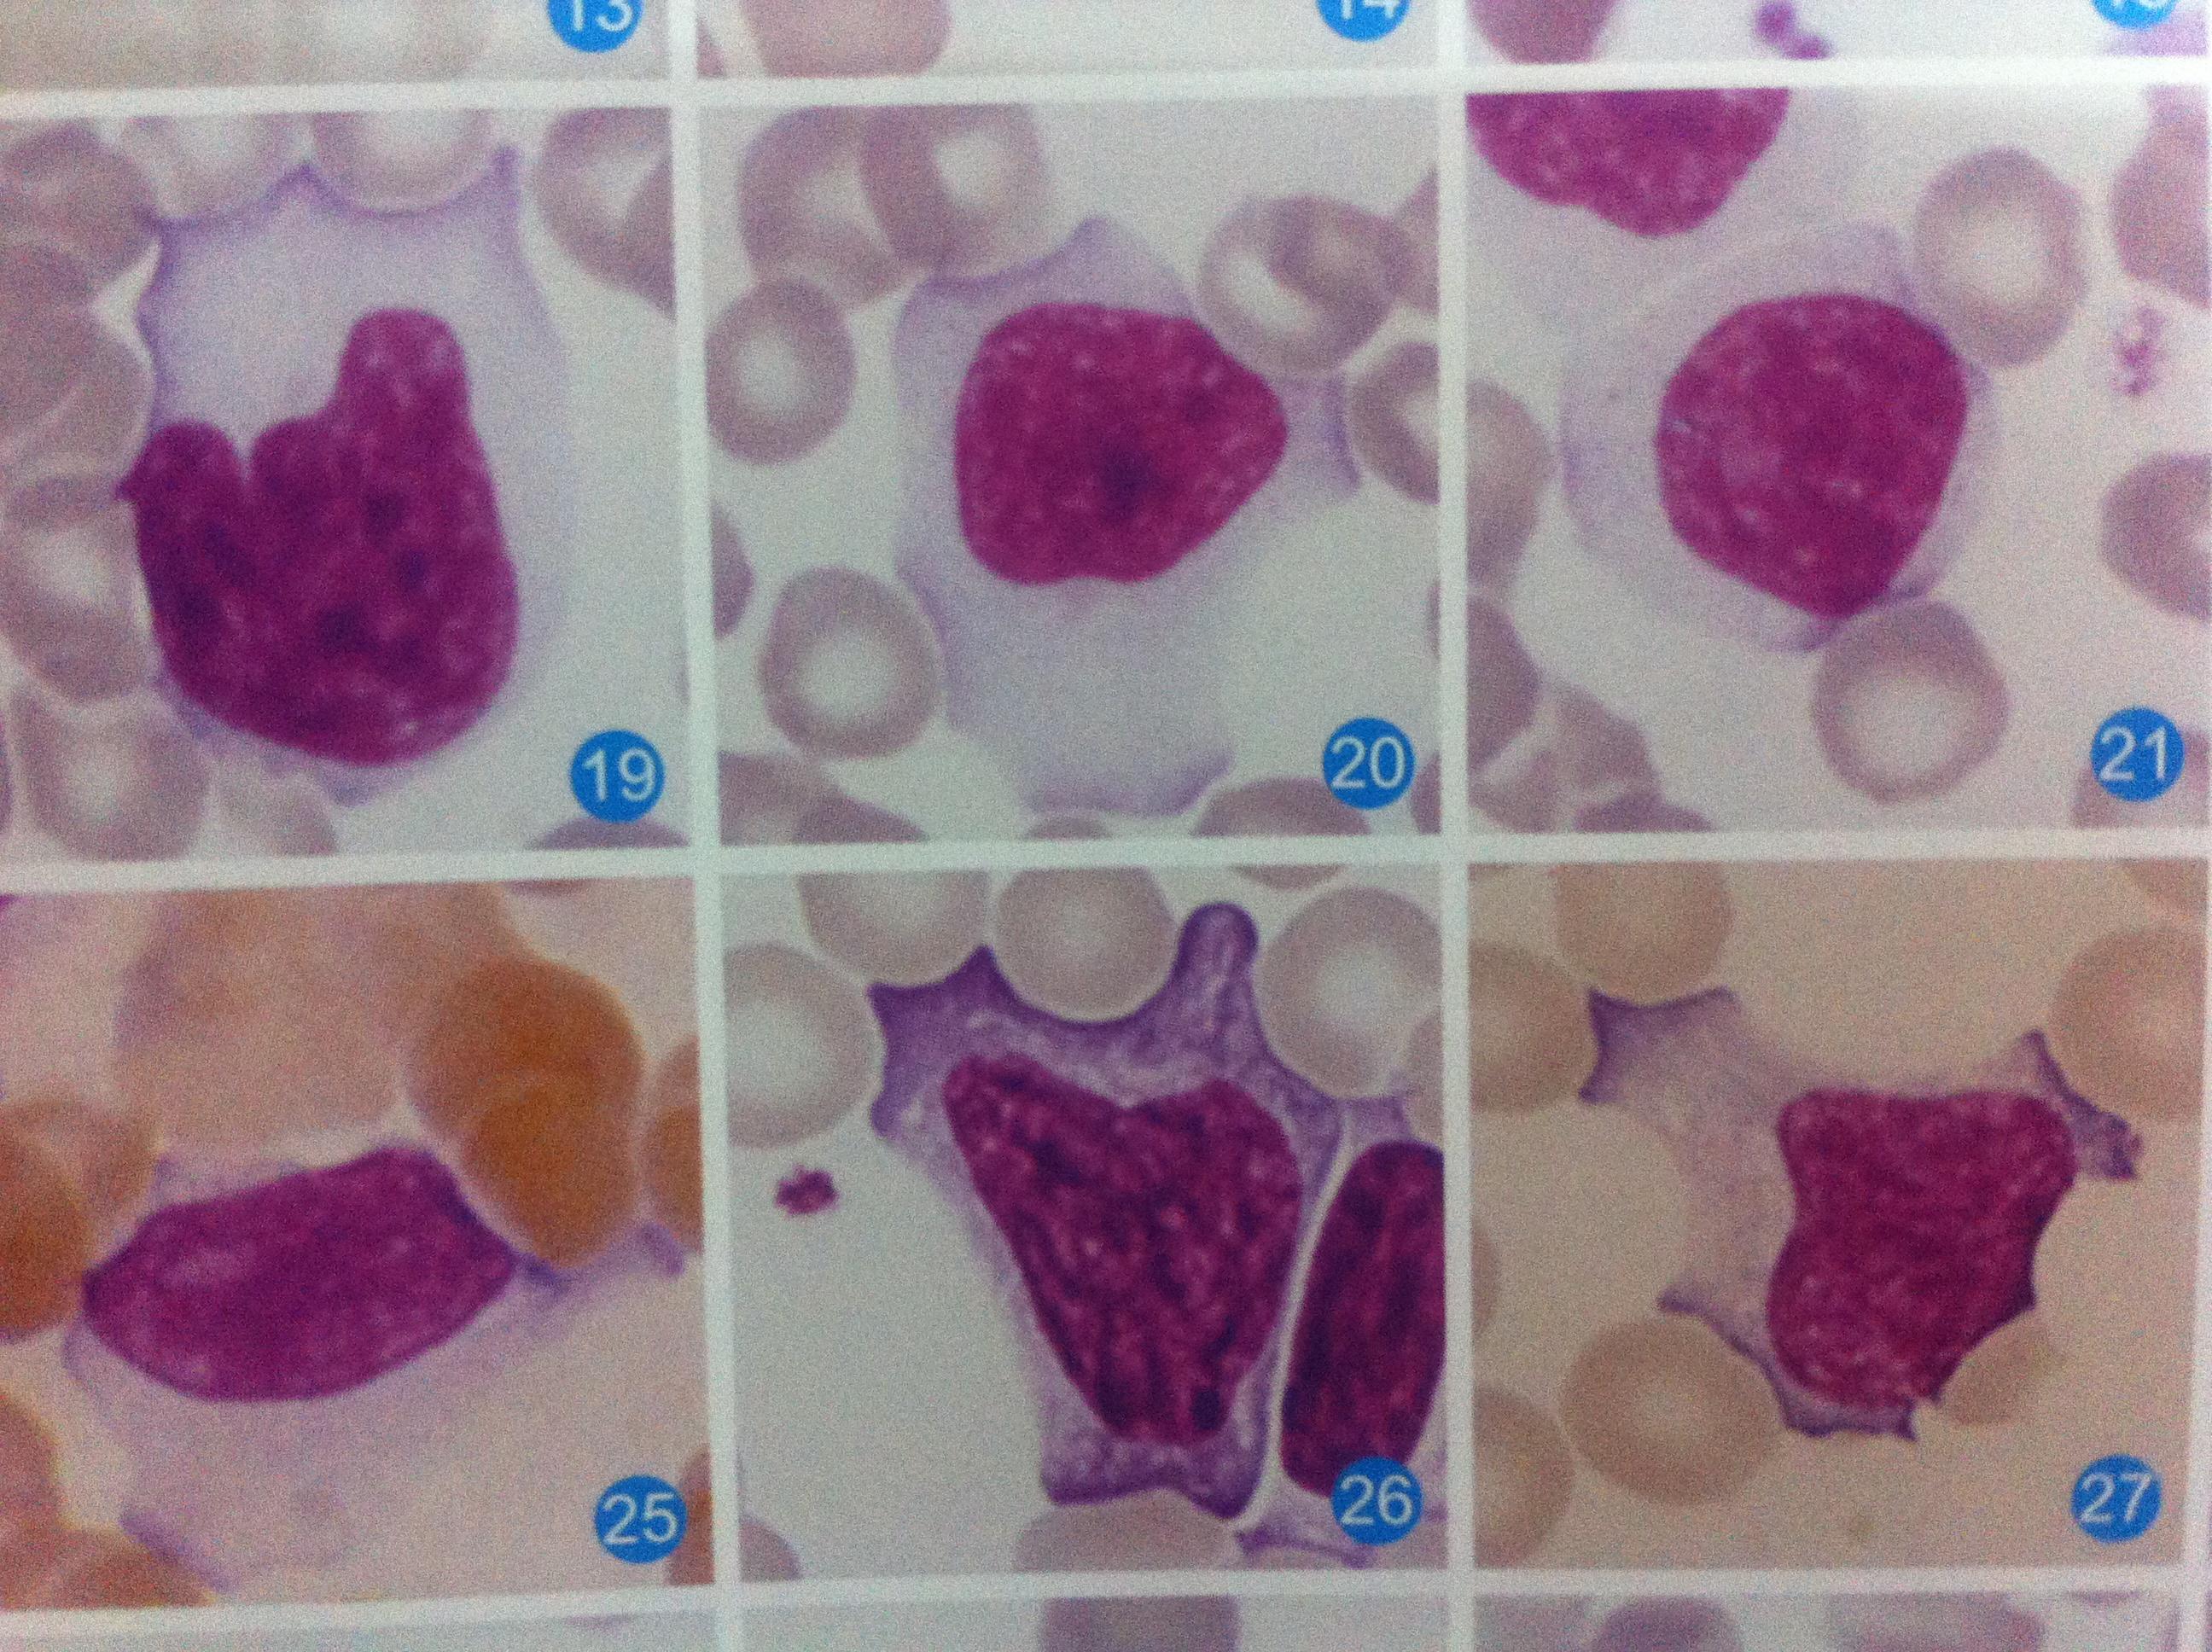 求异型淋巴细胞三种类型的多组图片及解析